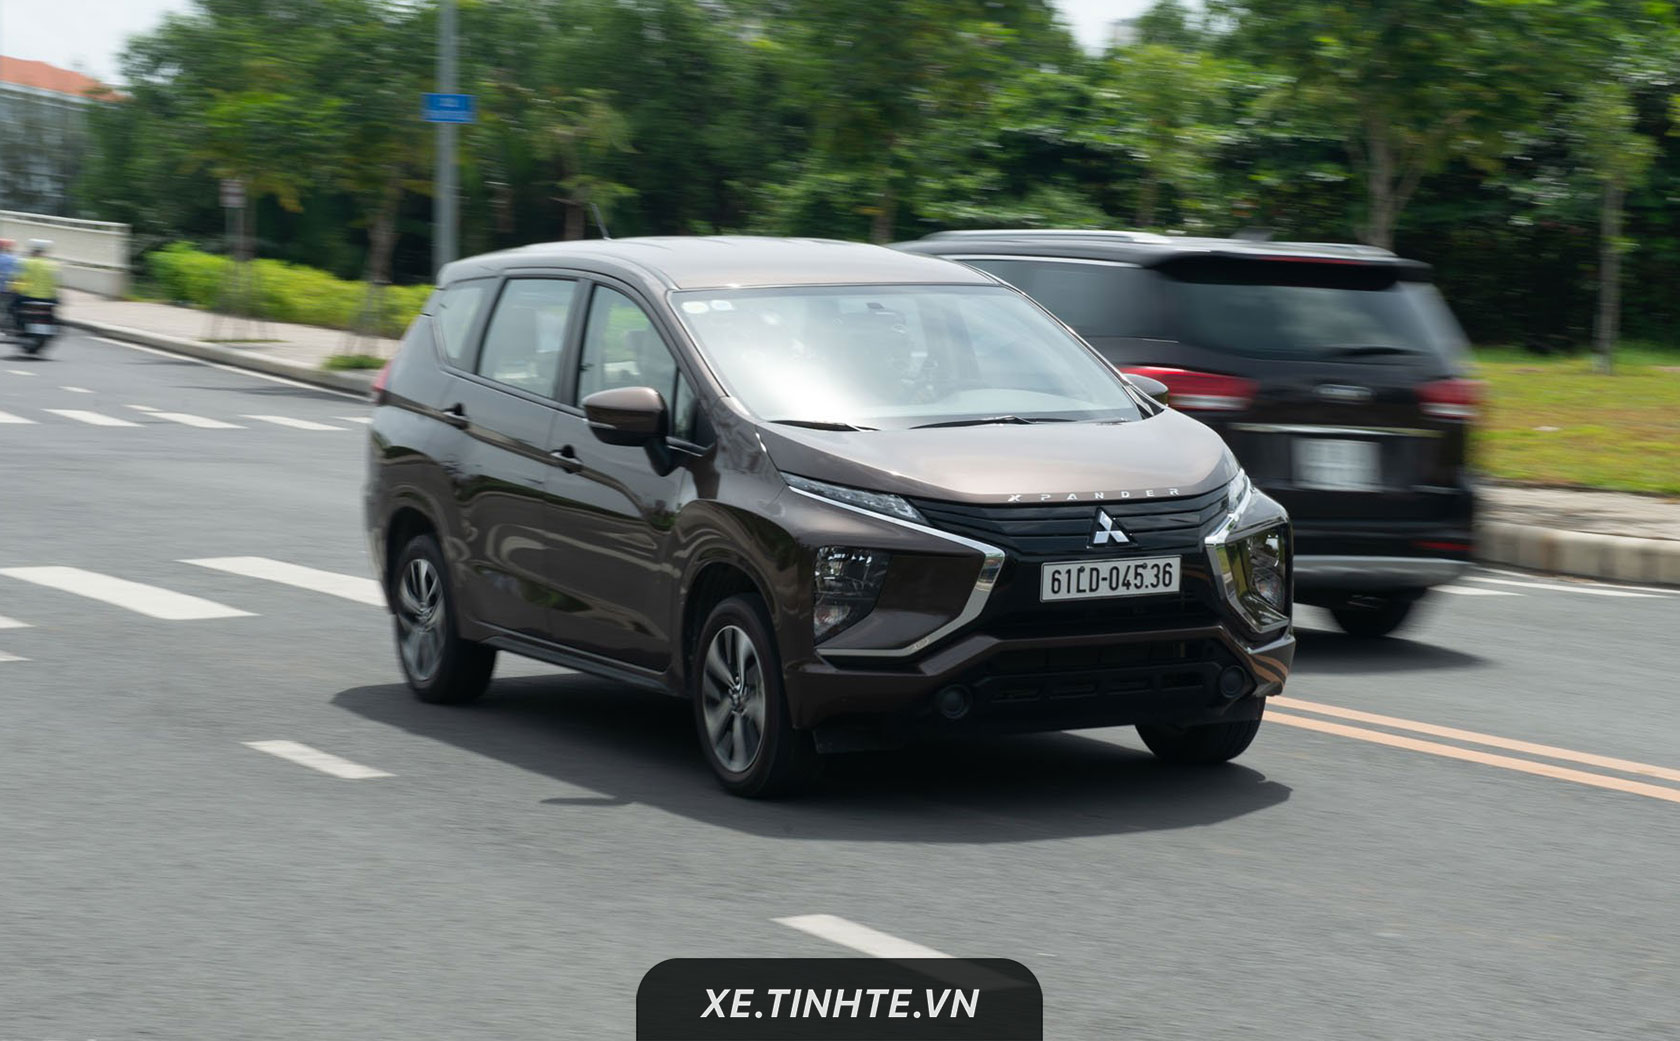 Giá chính thức của Mitsubishi Xpander bản AT thấp hơn 30 triệu